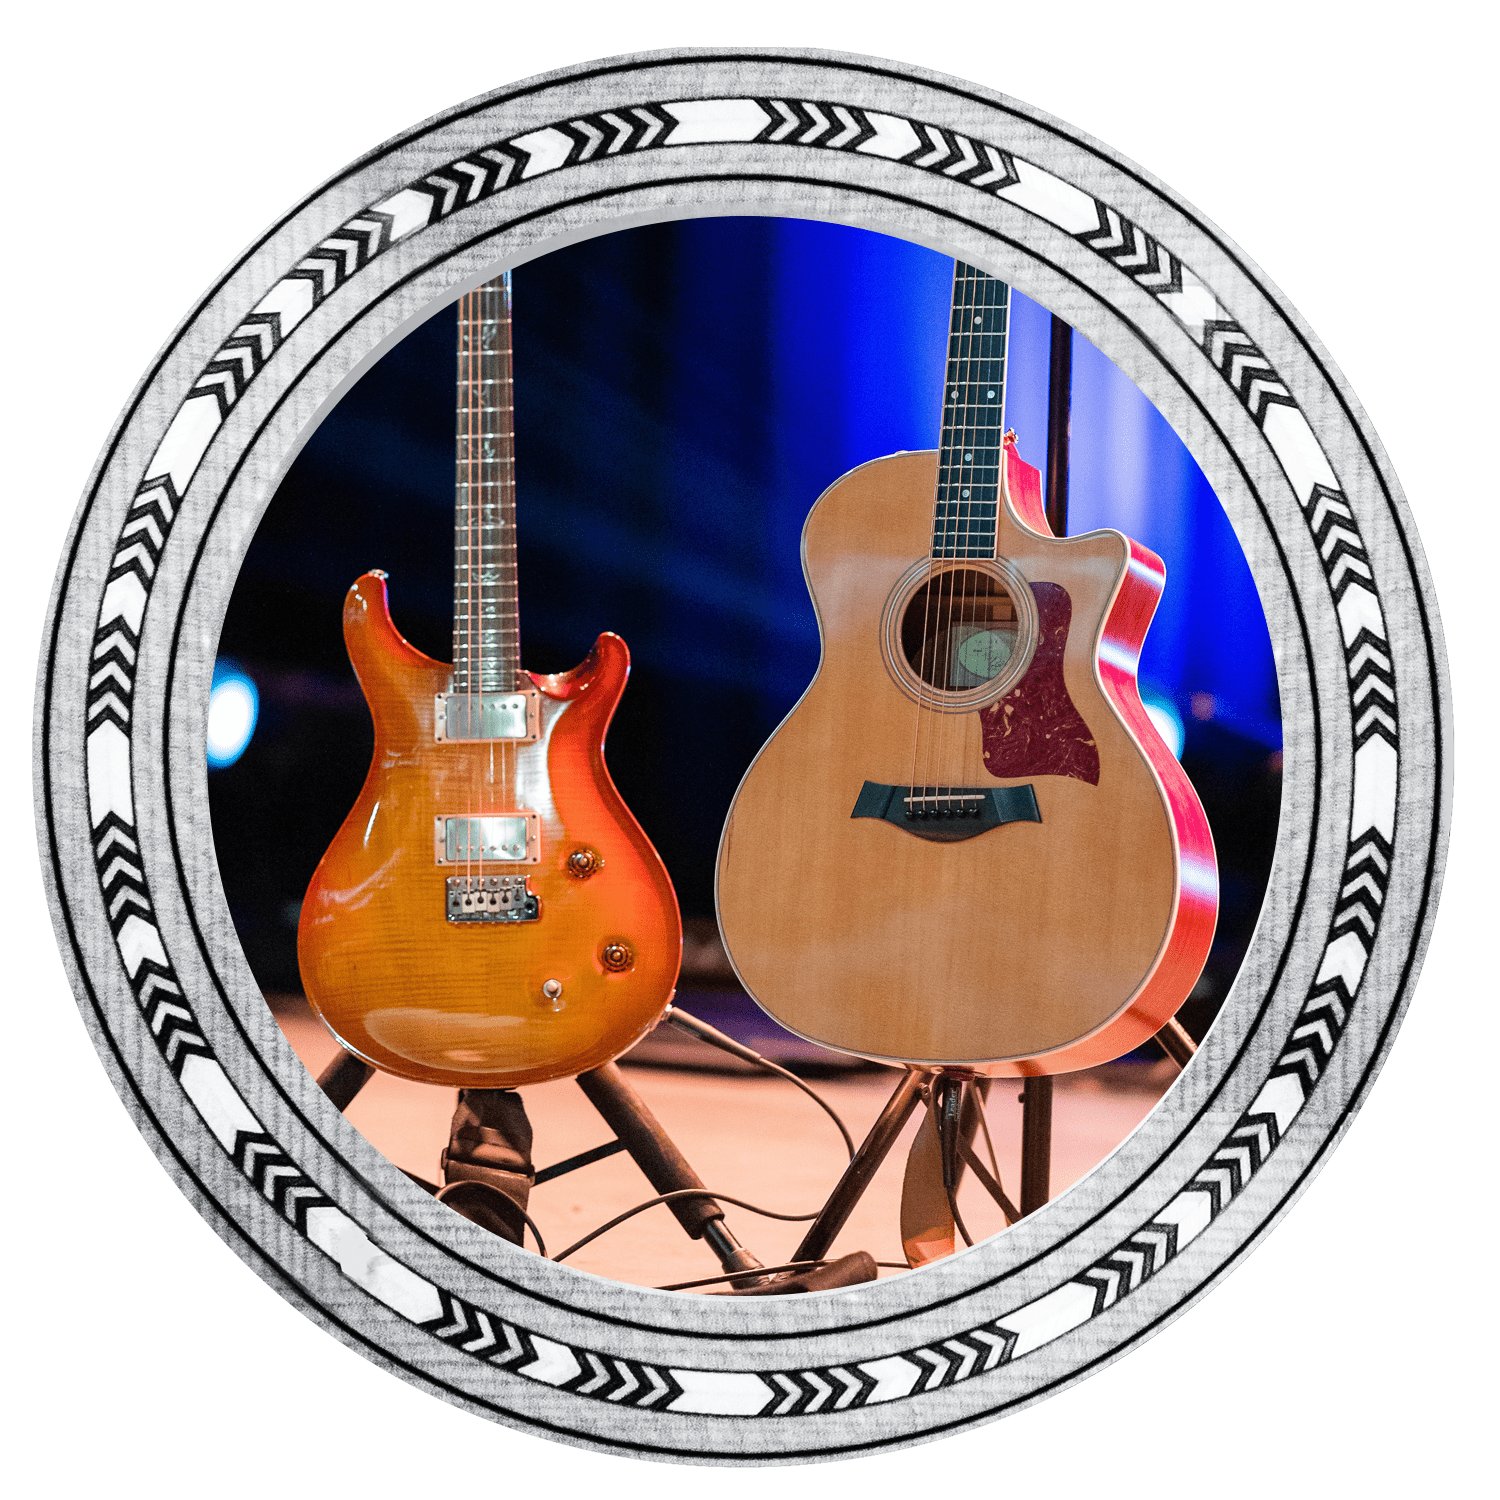 Quelles cordes pour guitare folk - Guide d'achat : Guitare